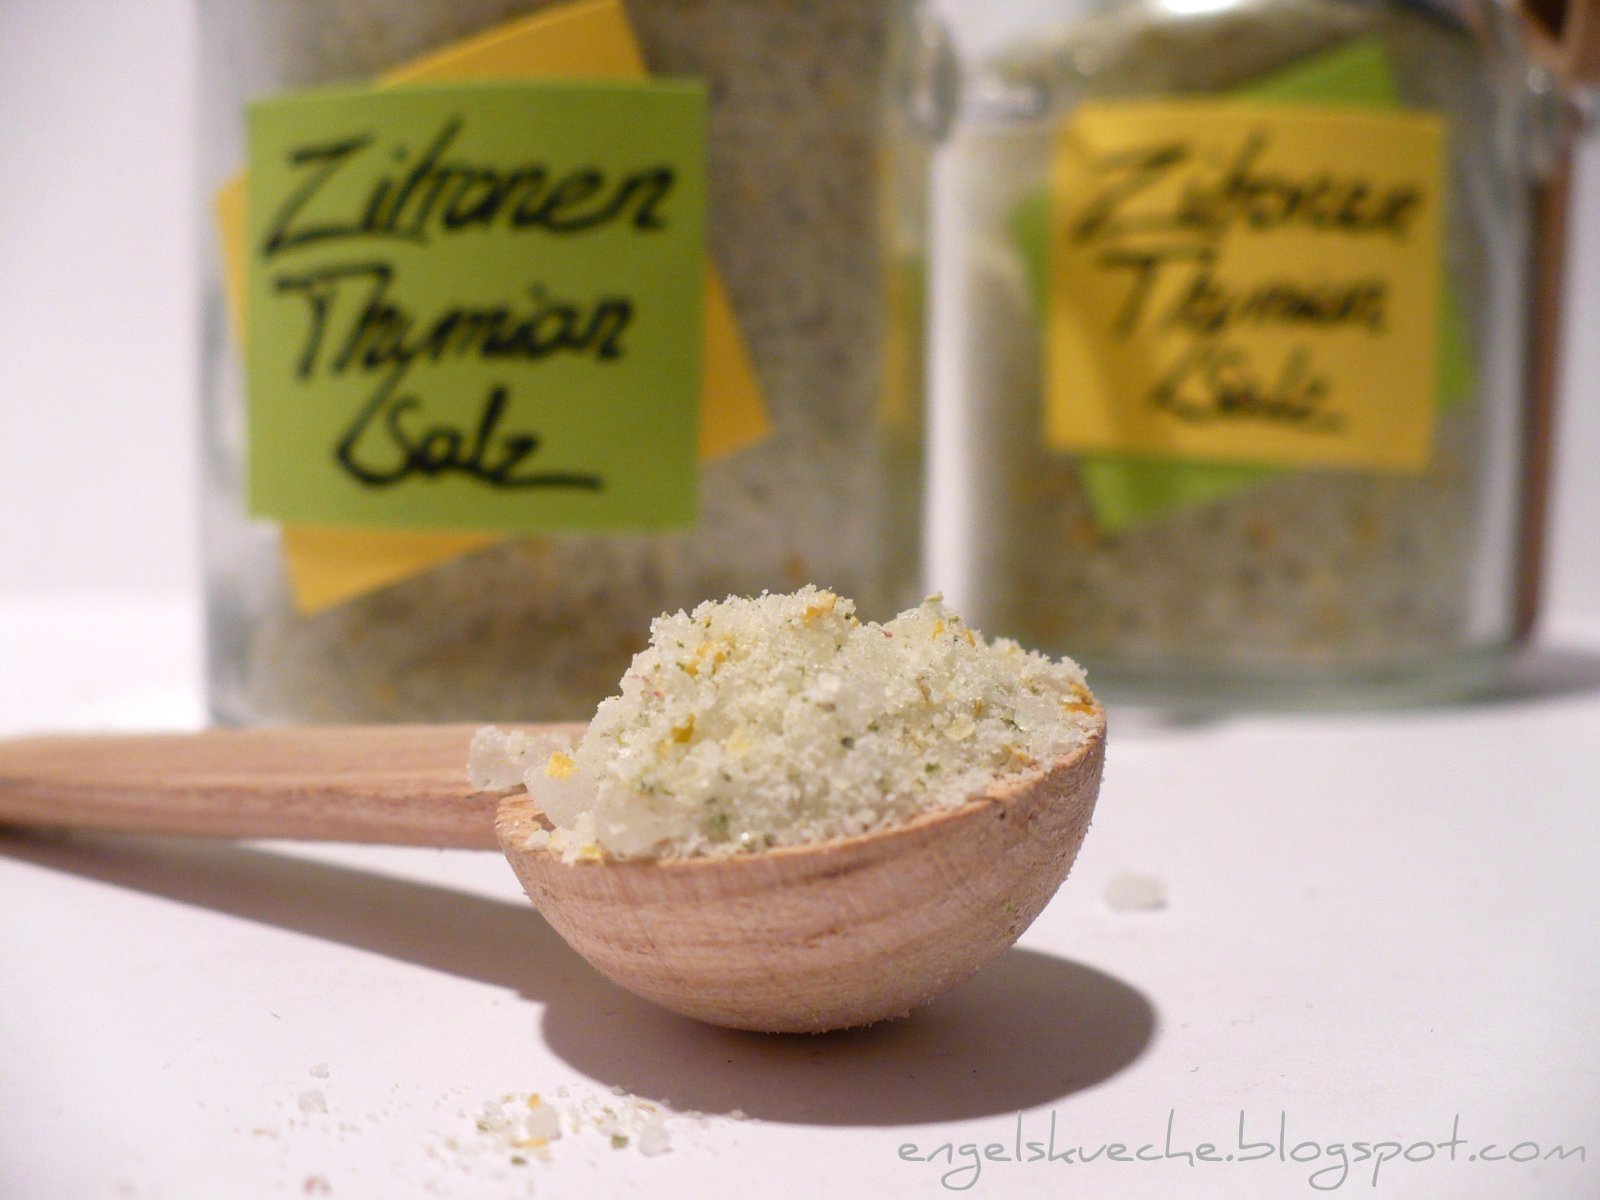 Essen aus Engelchens Küche: Zitronen-Thymian-Salz